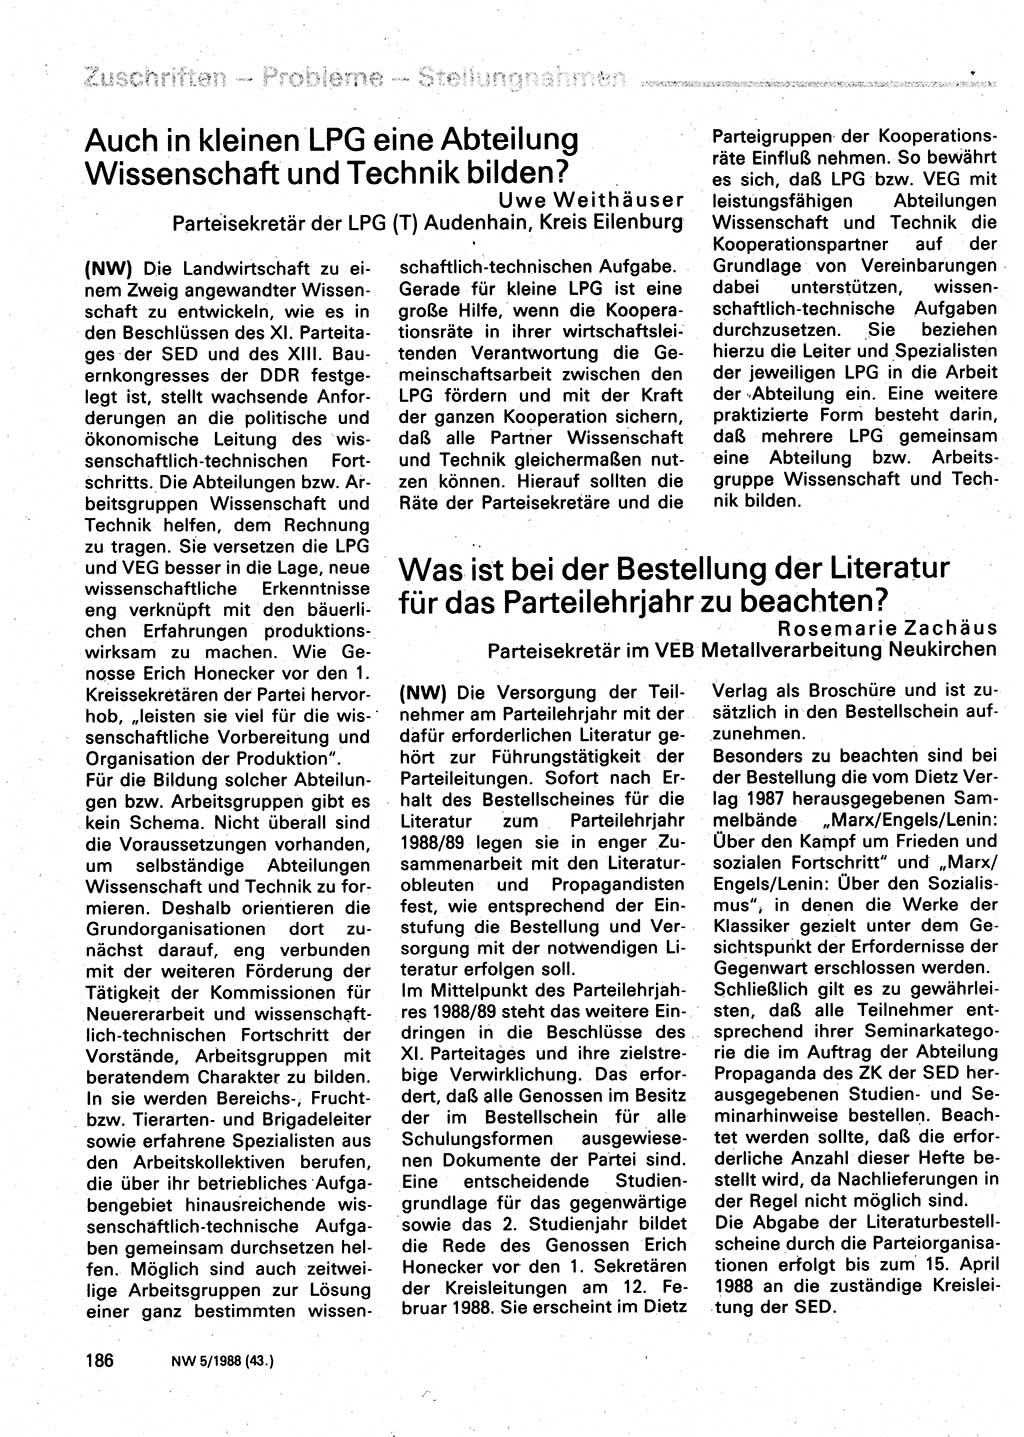 Neuer Weg (NW), Organ des Zentralkomitees (ZK) der SED (Sozialistische Einheitspartei Deutschlands) für Fragen des Parteilebens, 43. Jahrgang [Deutsche Demokratische Republik (DDR)] 1988, Seite 186 (NW ZK SED DDR 1988, S. 186)